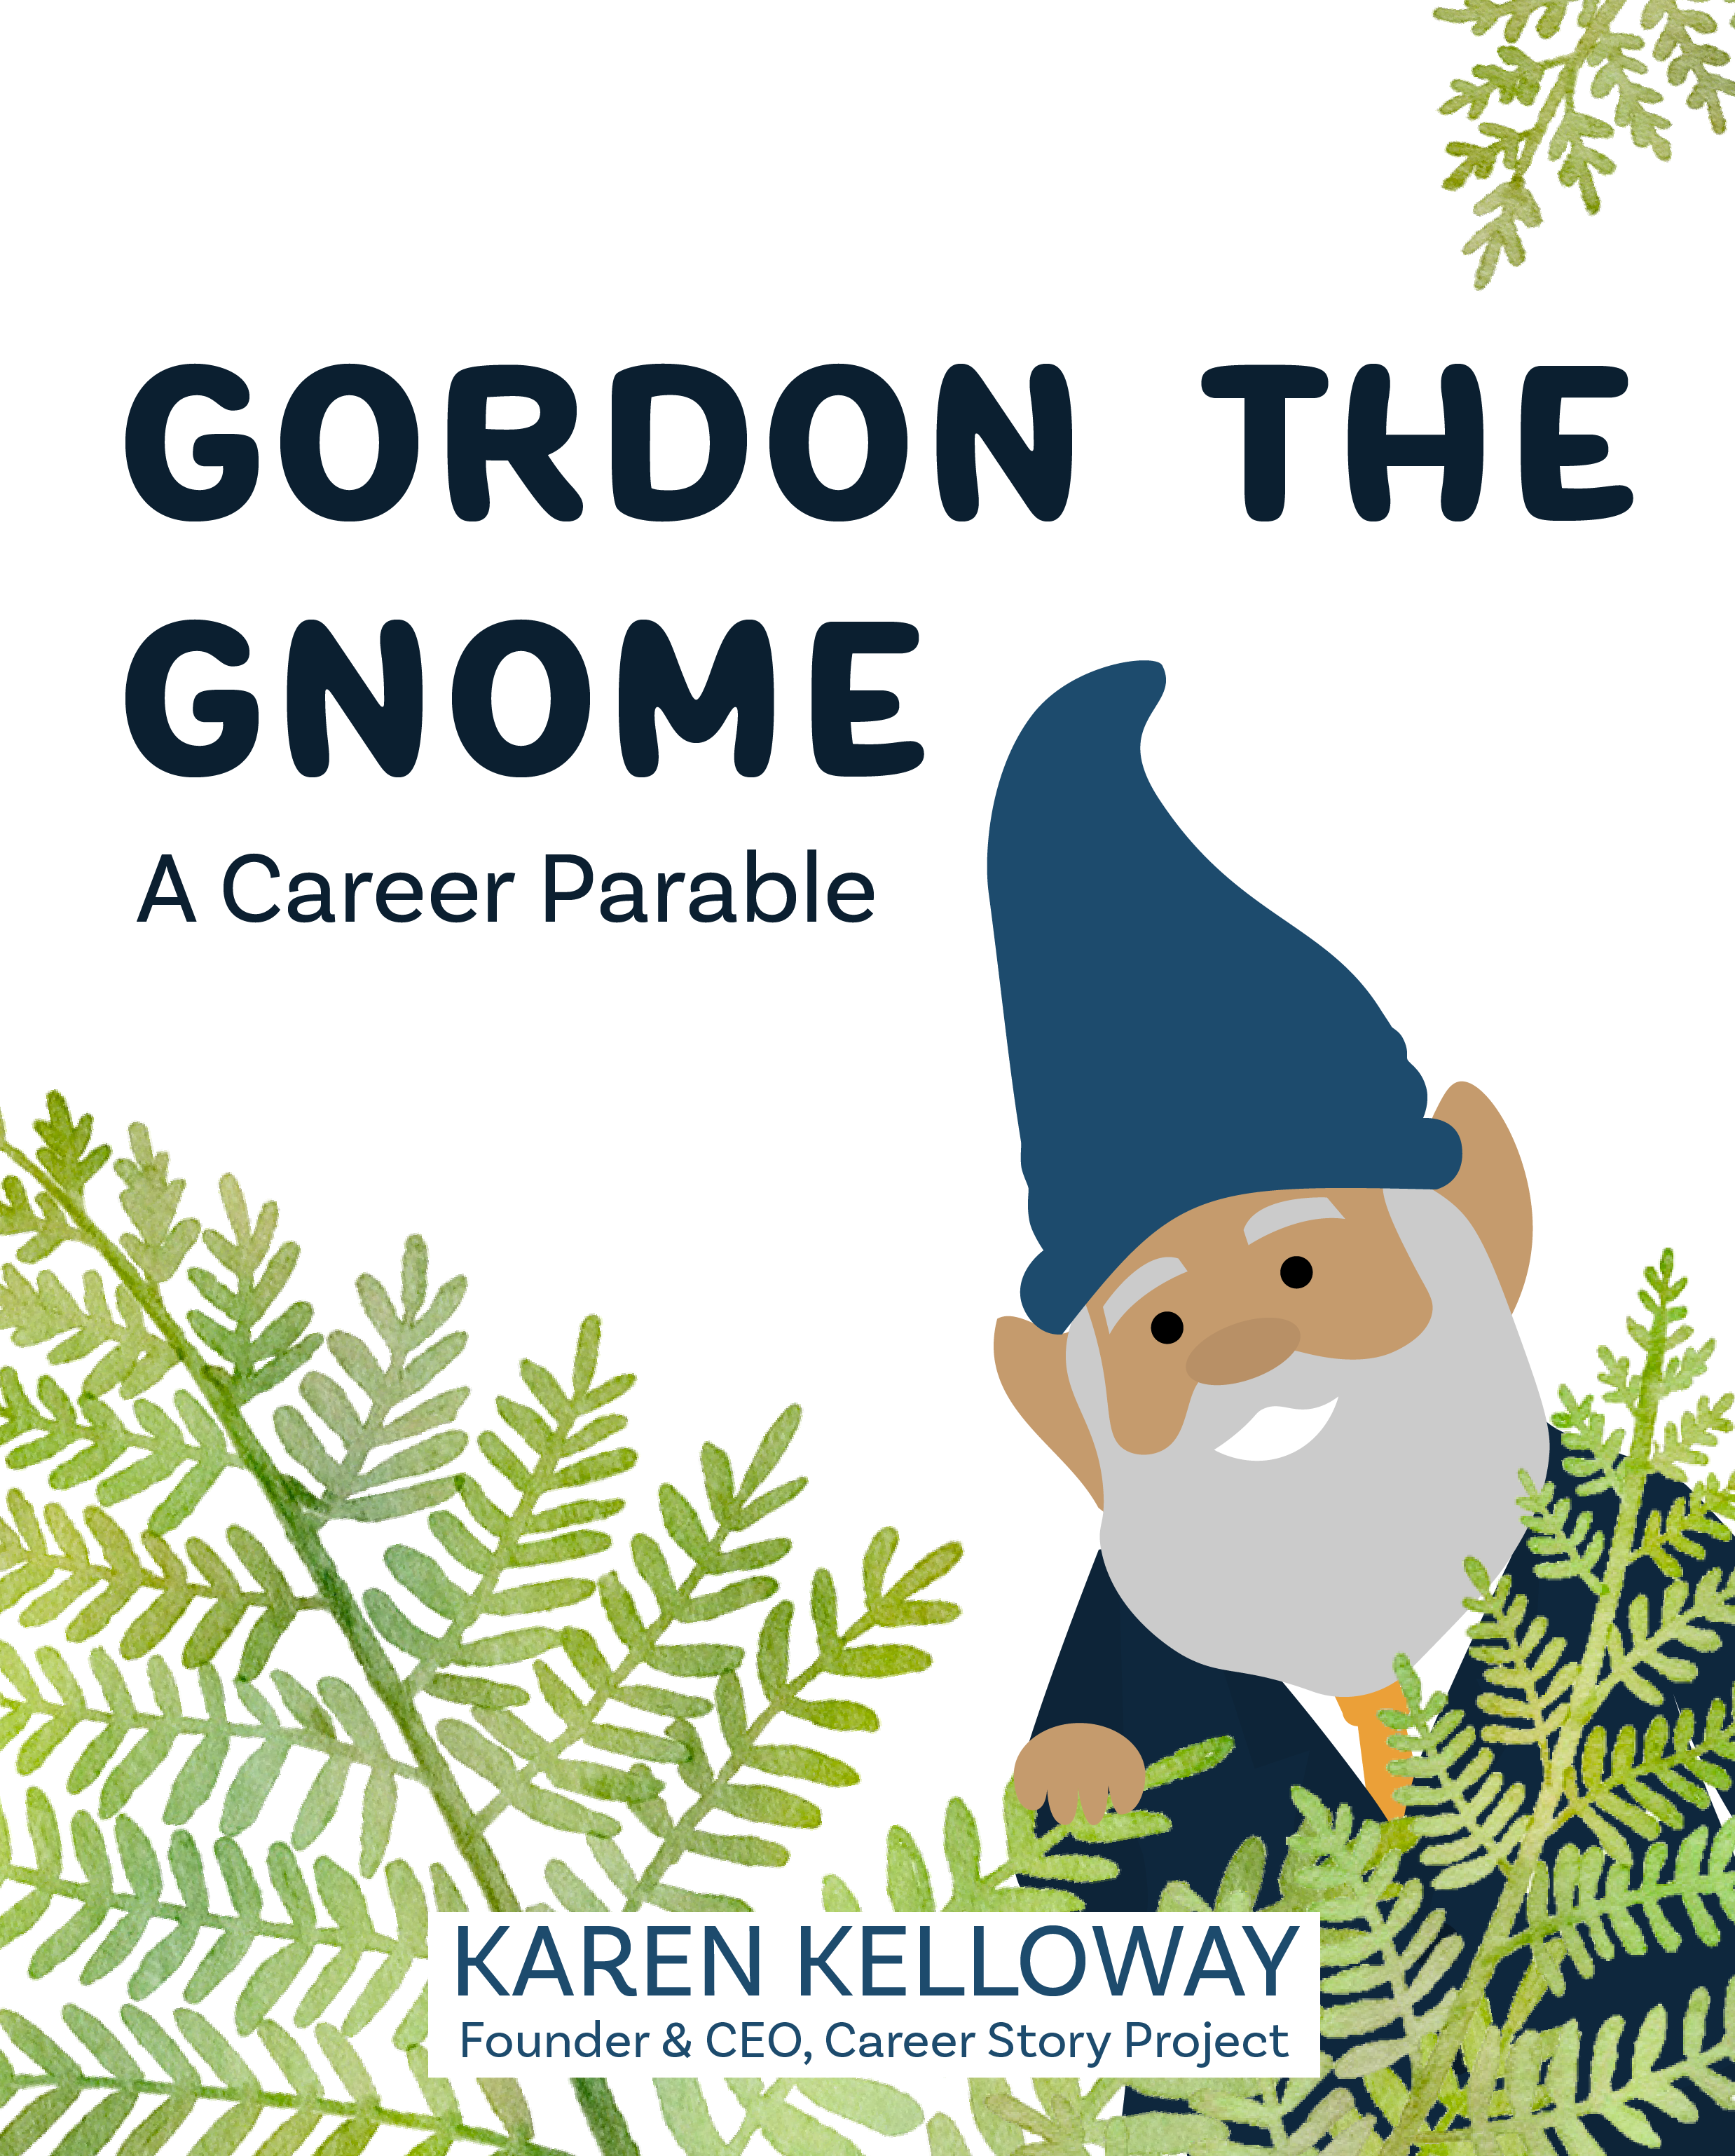 Gordon the Gnome book cover